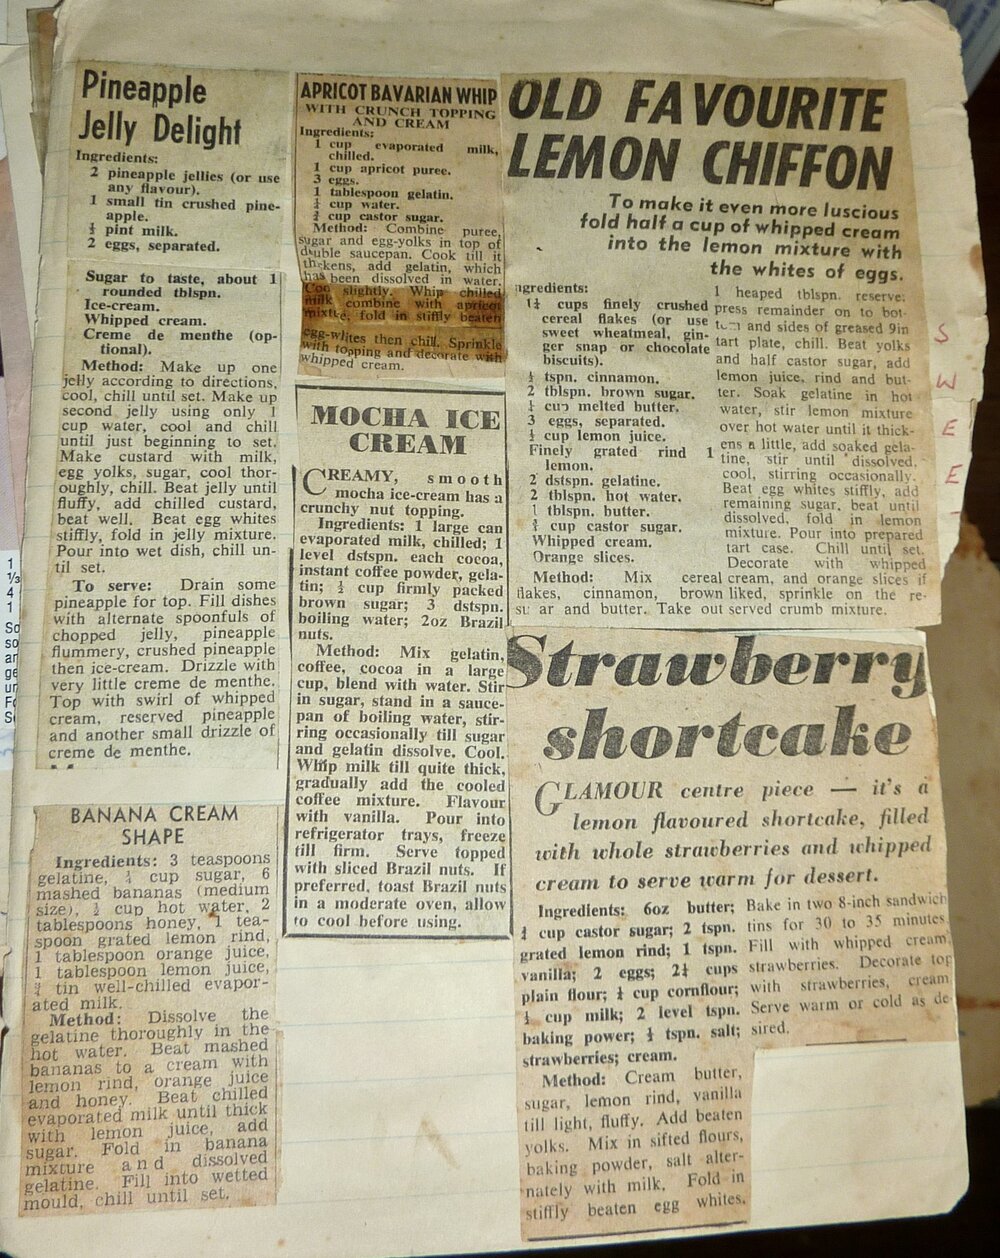 Lemon Chiffon, Strawberry shortcake